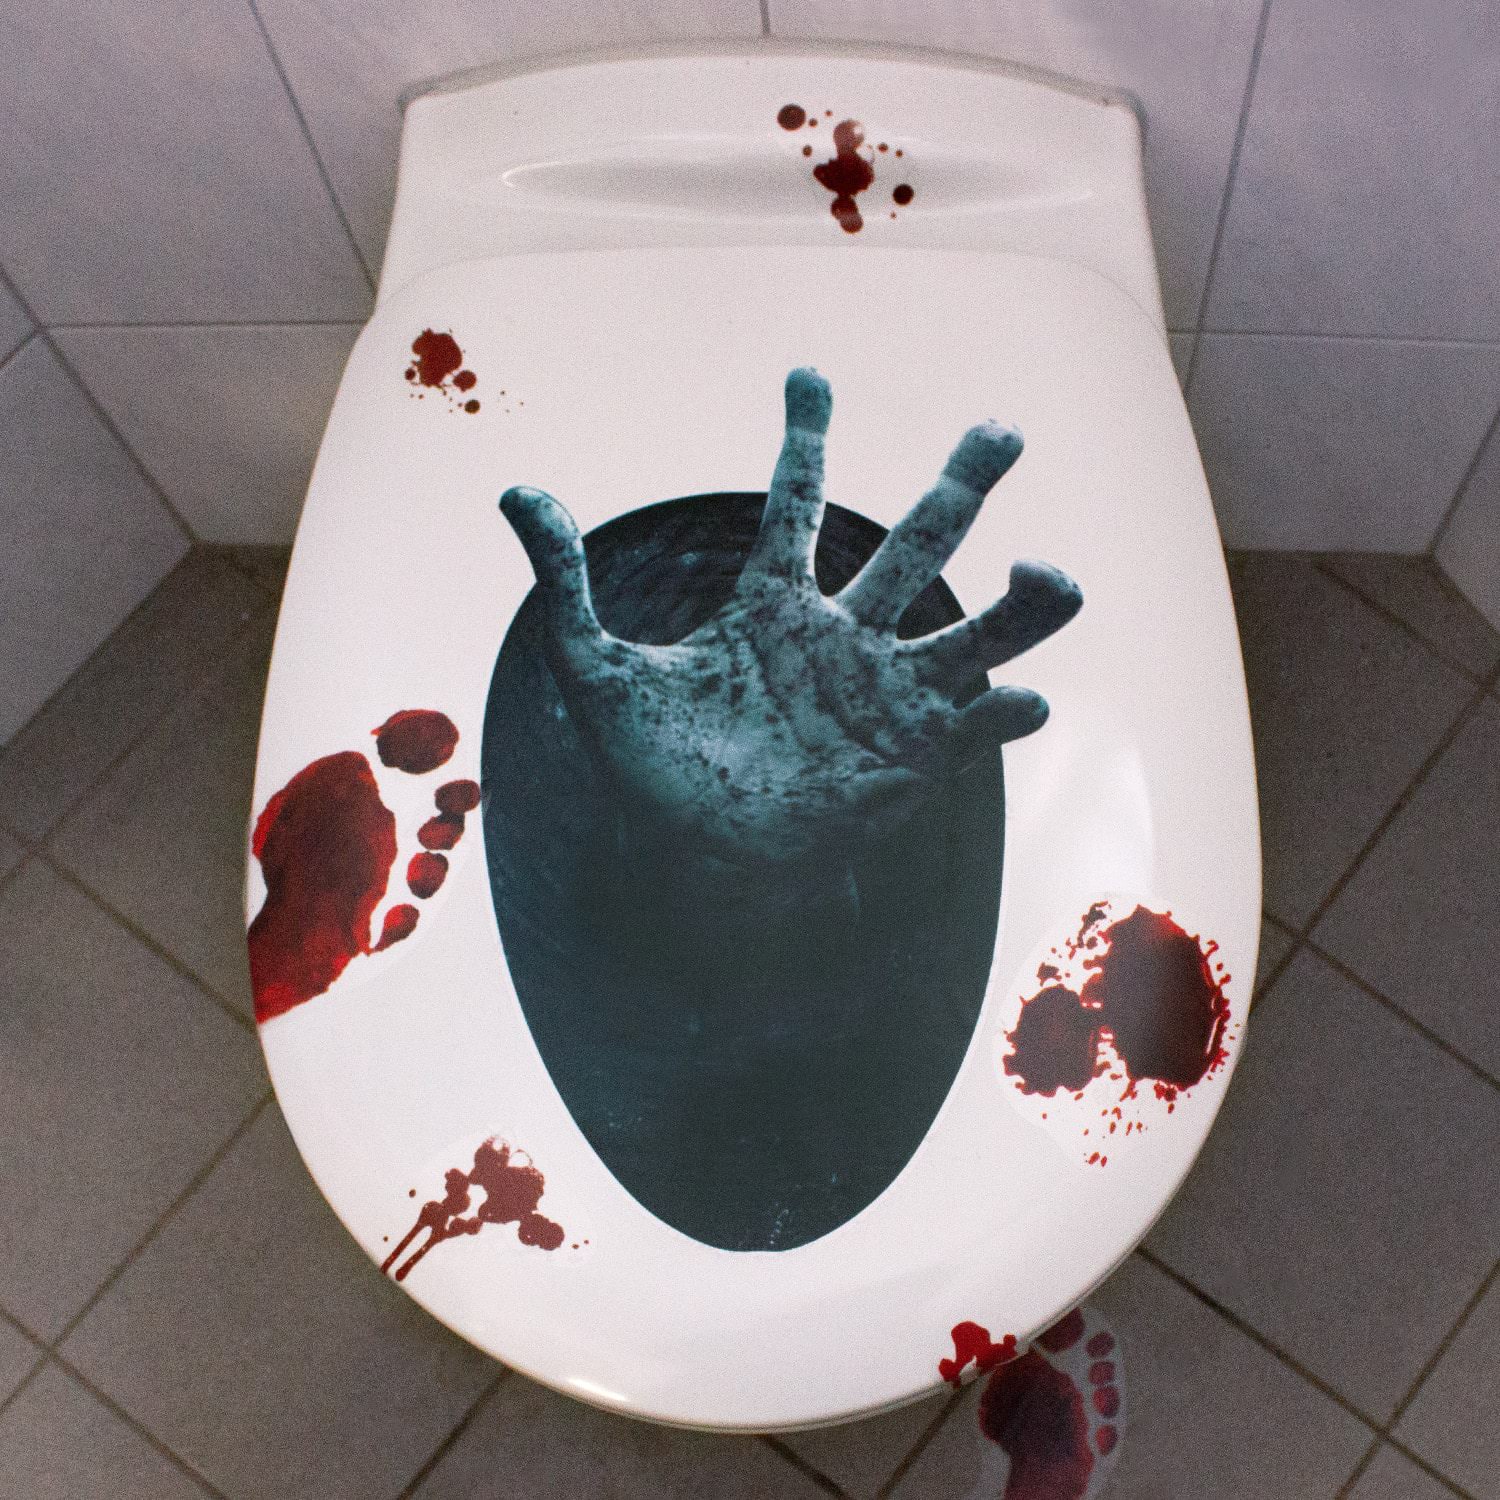 WC Deckel Aufkleber Halloween Toiletten Sticker